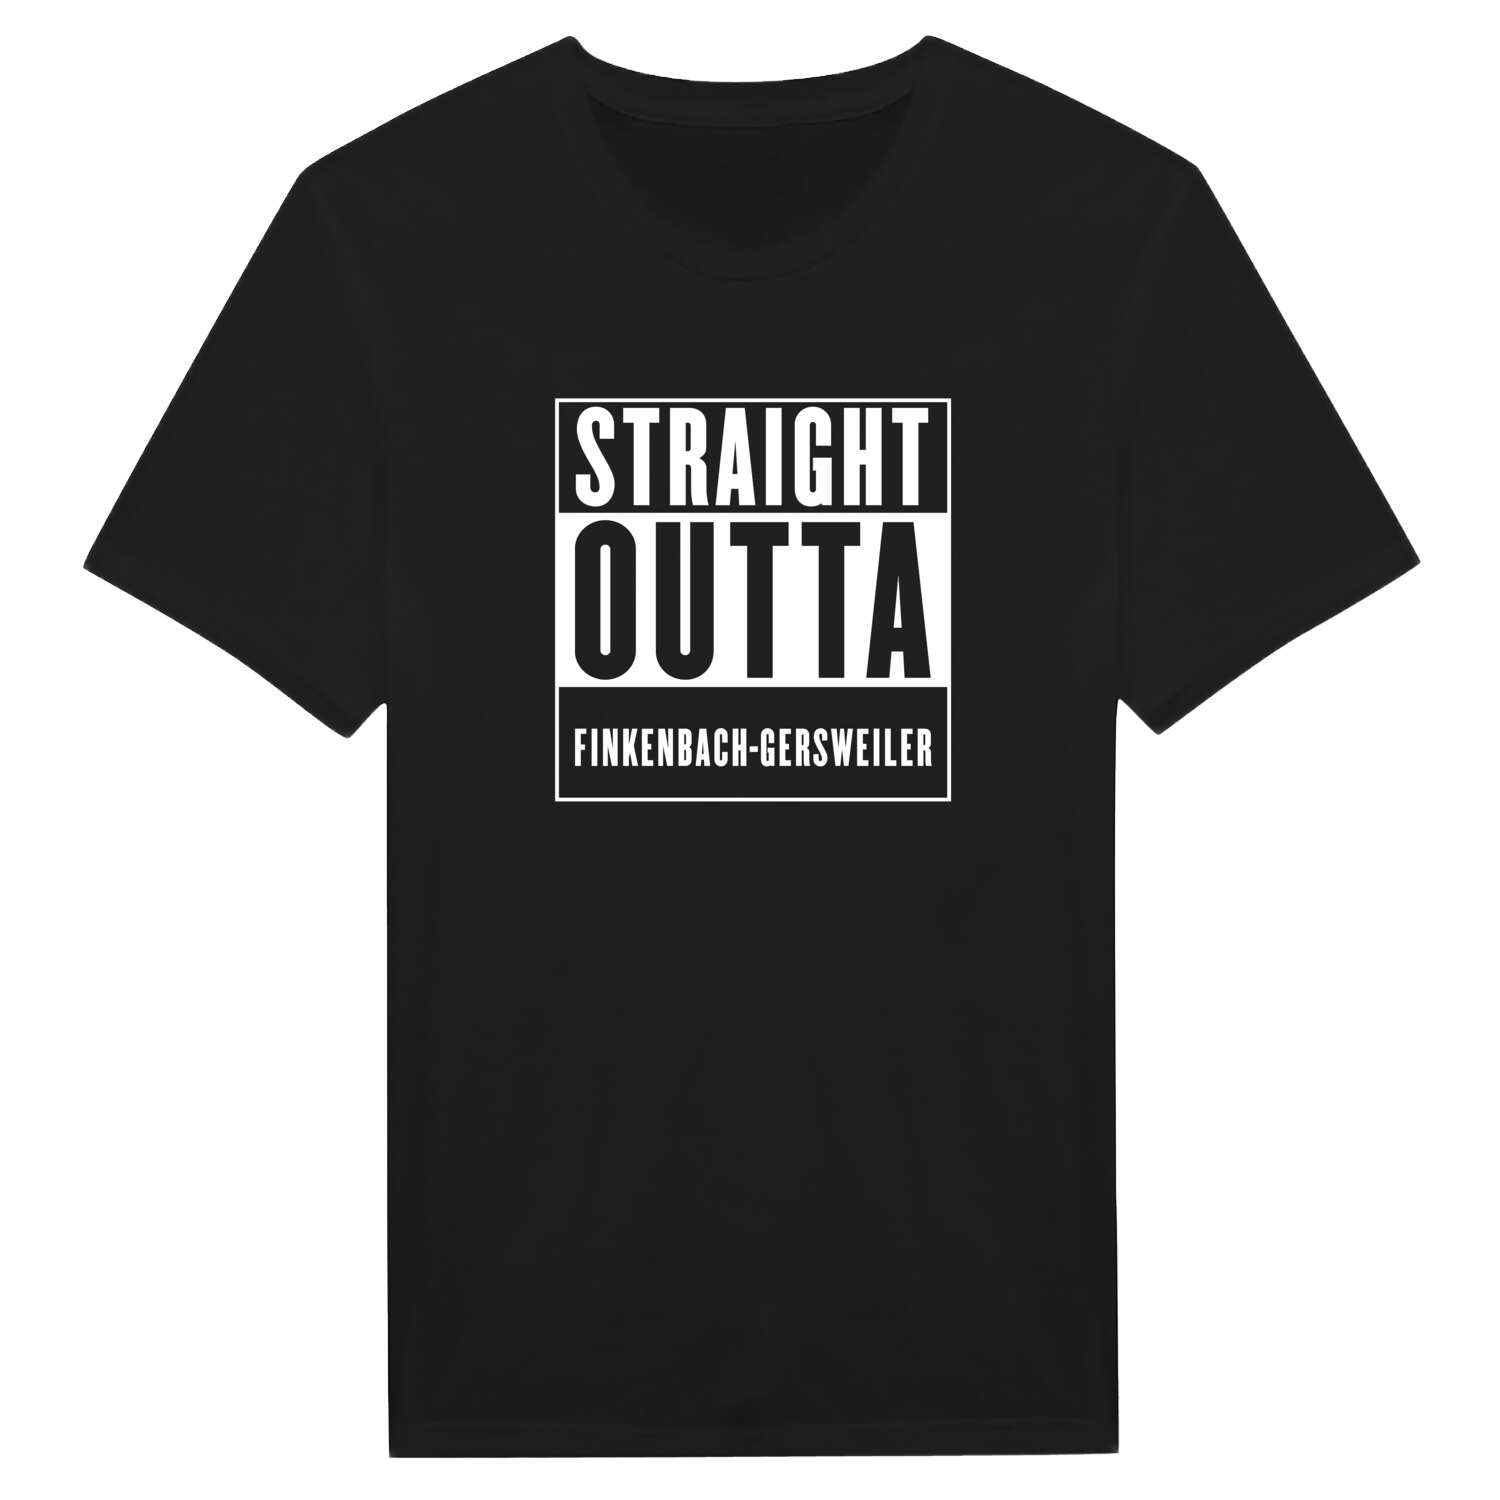 Finkenbach-Gersweiler T-Shirt »Straight Outta«